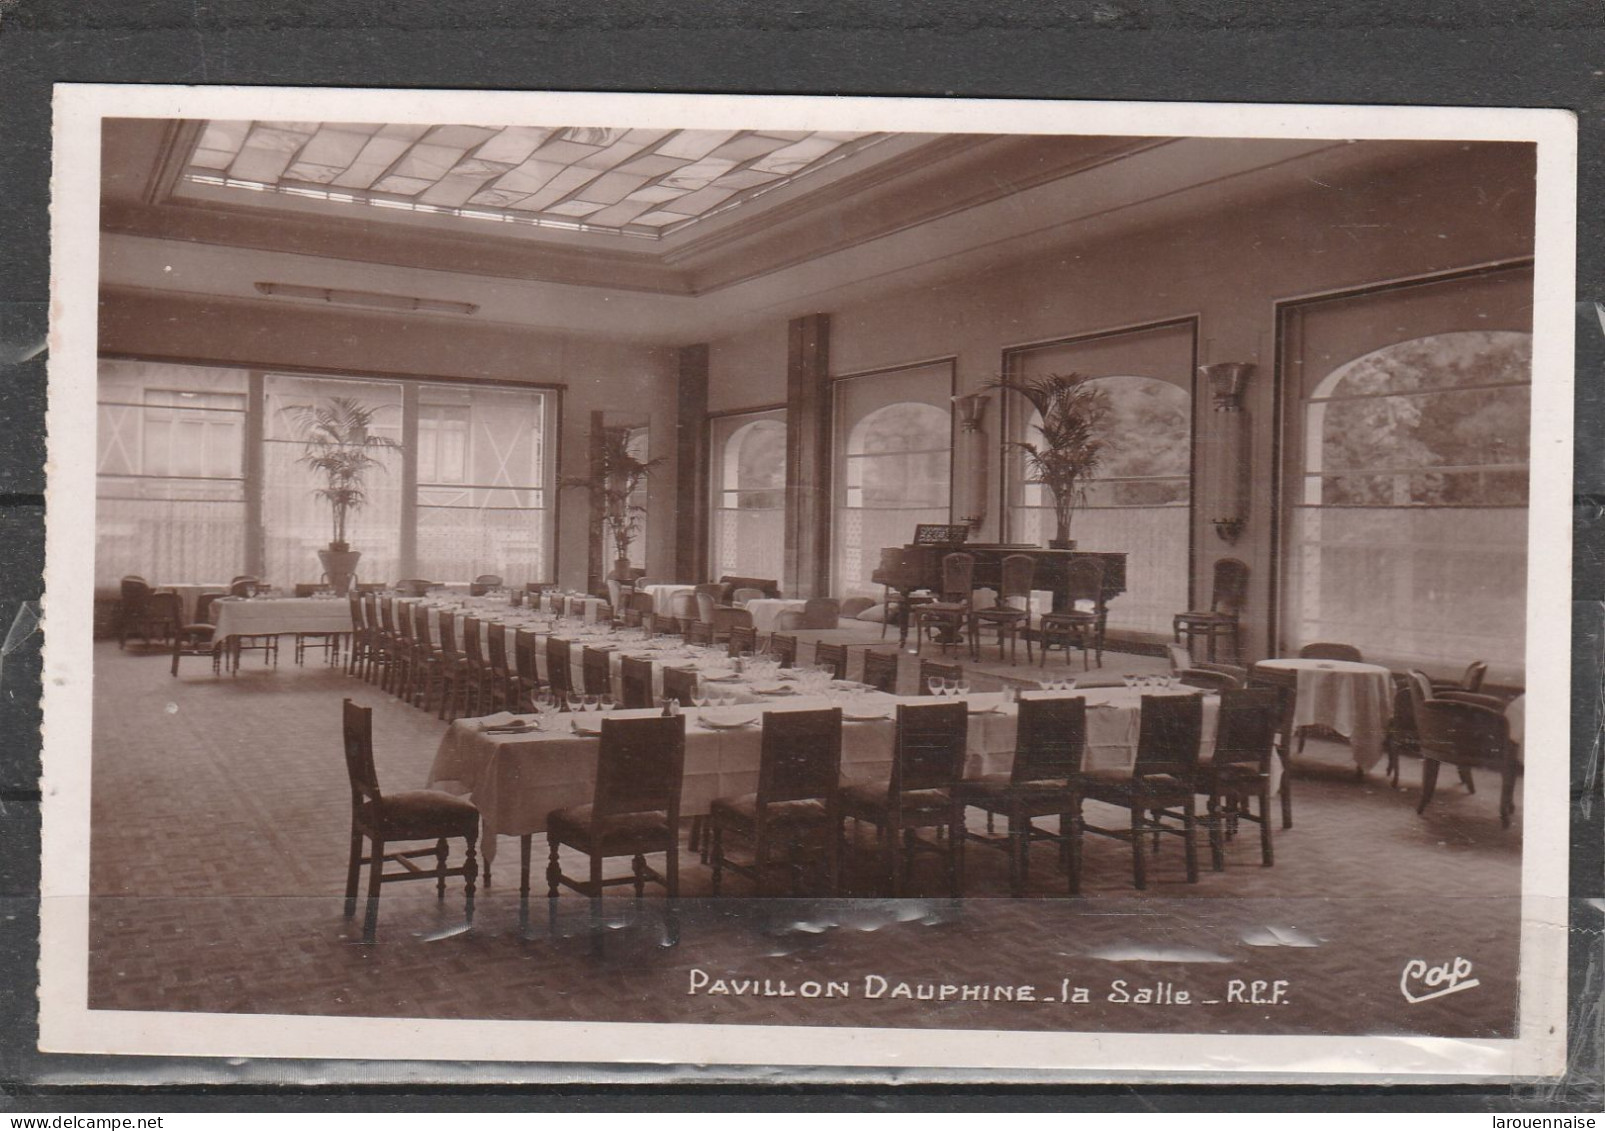 75016 - PARIS - Pavillon Dauphine - La Salle - R.C.F. - Cafés, Hoteles, Restaurantes